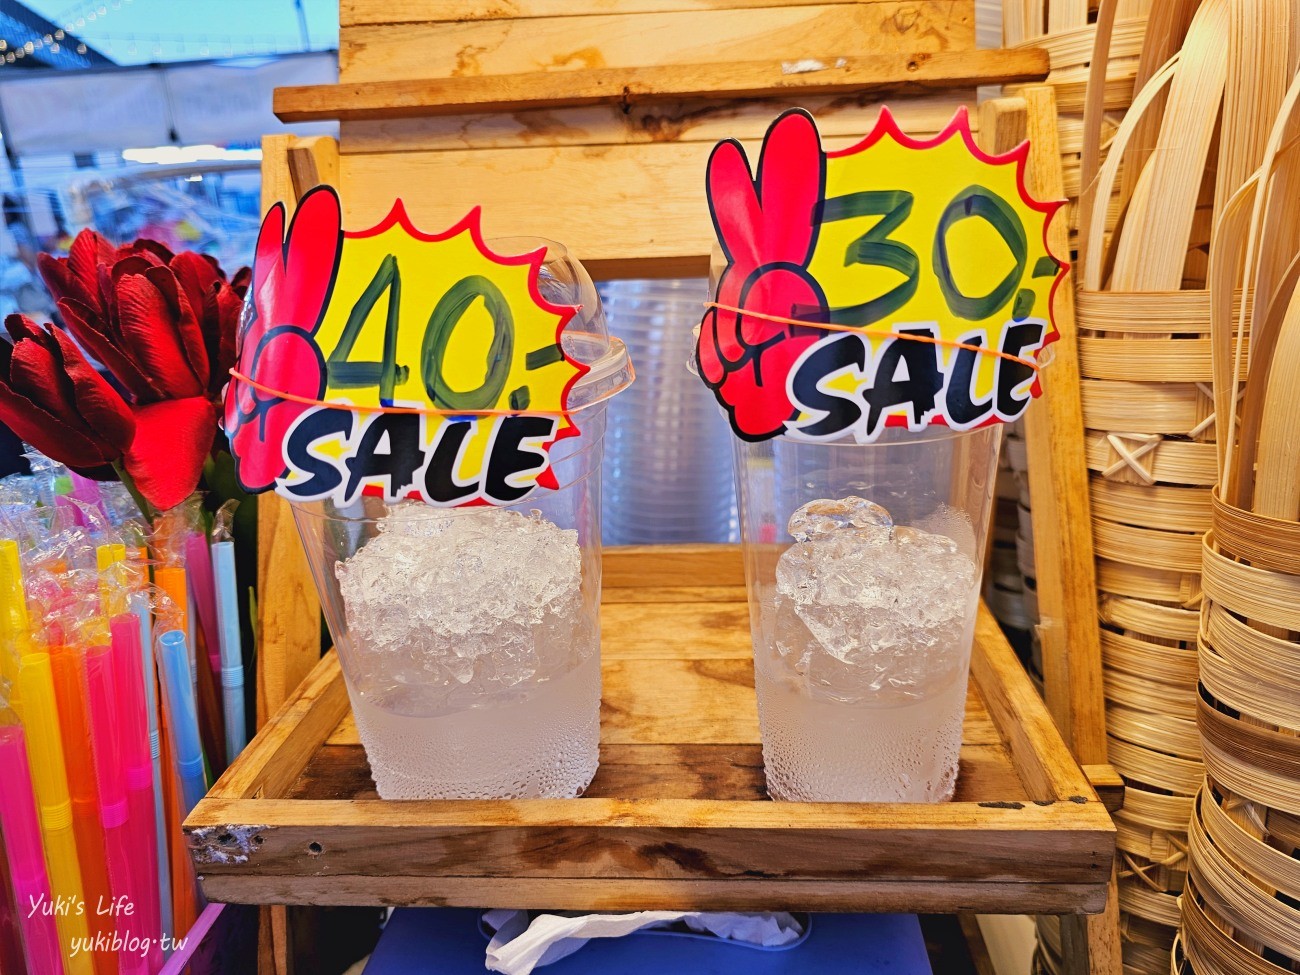 曼谷新夜市【Save One GO Market】東西便宜10泰銖超好買(交通.營業資訊) - yuki.tw